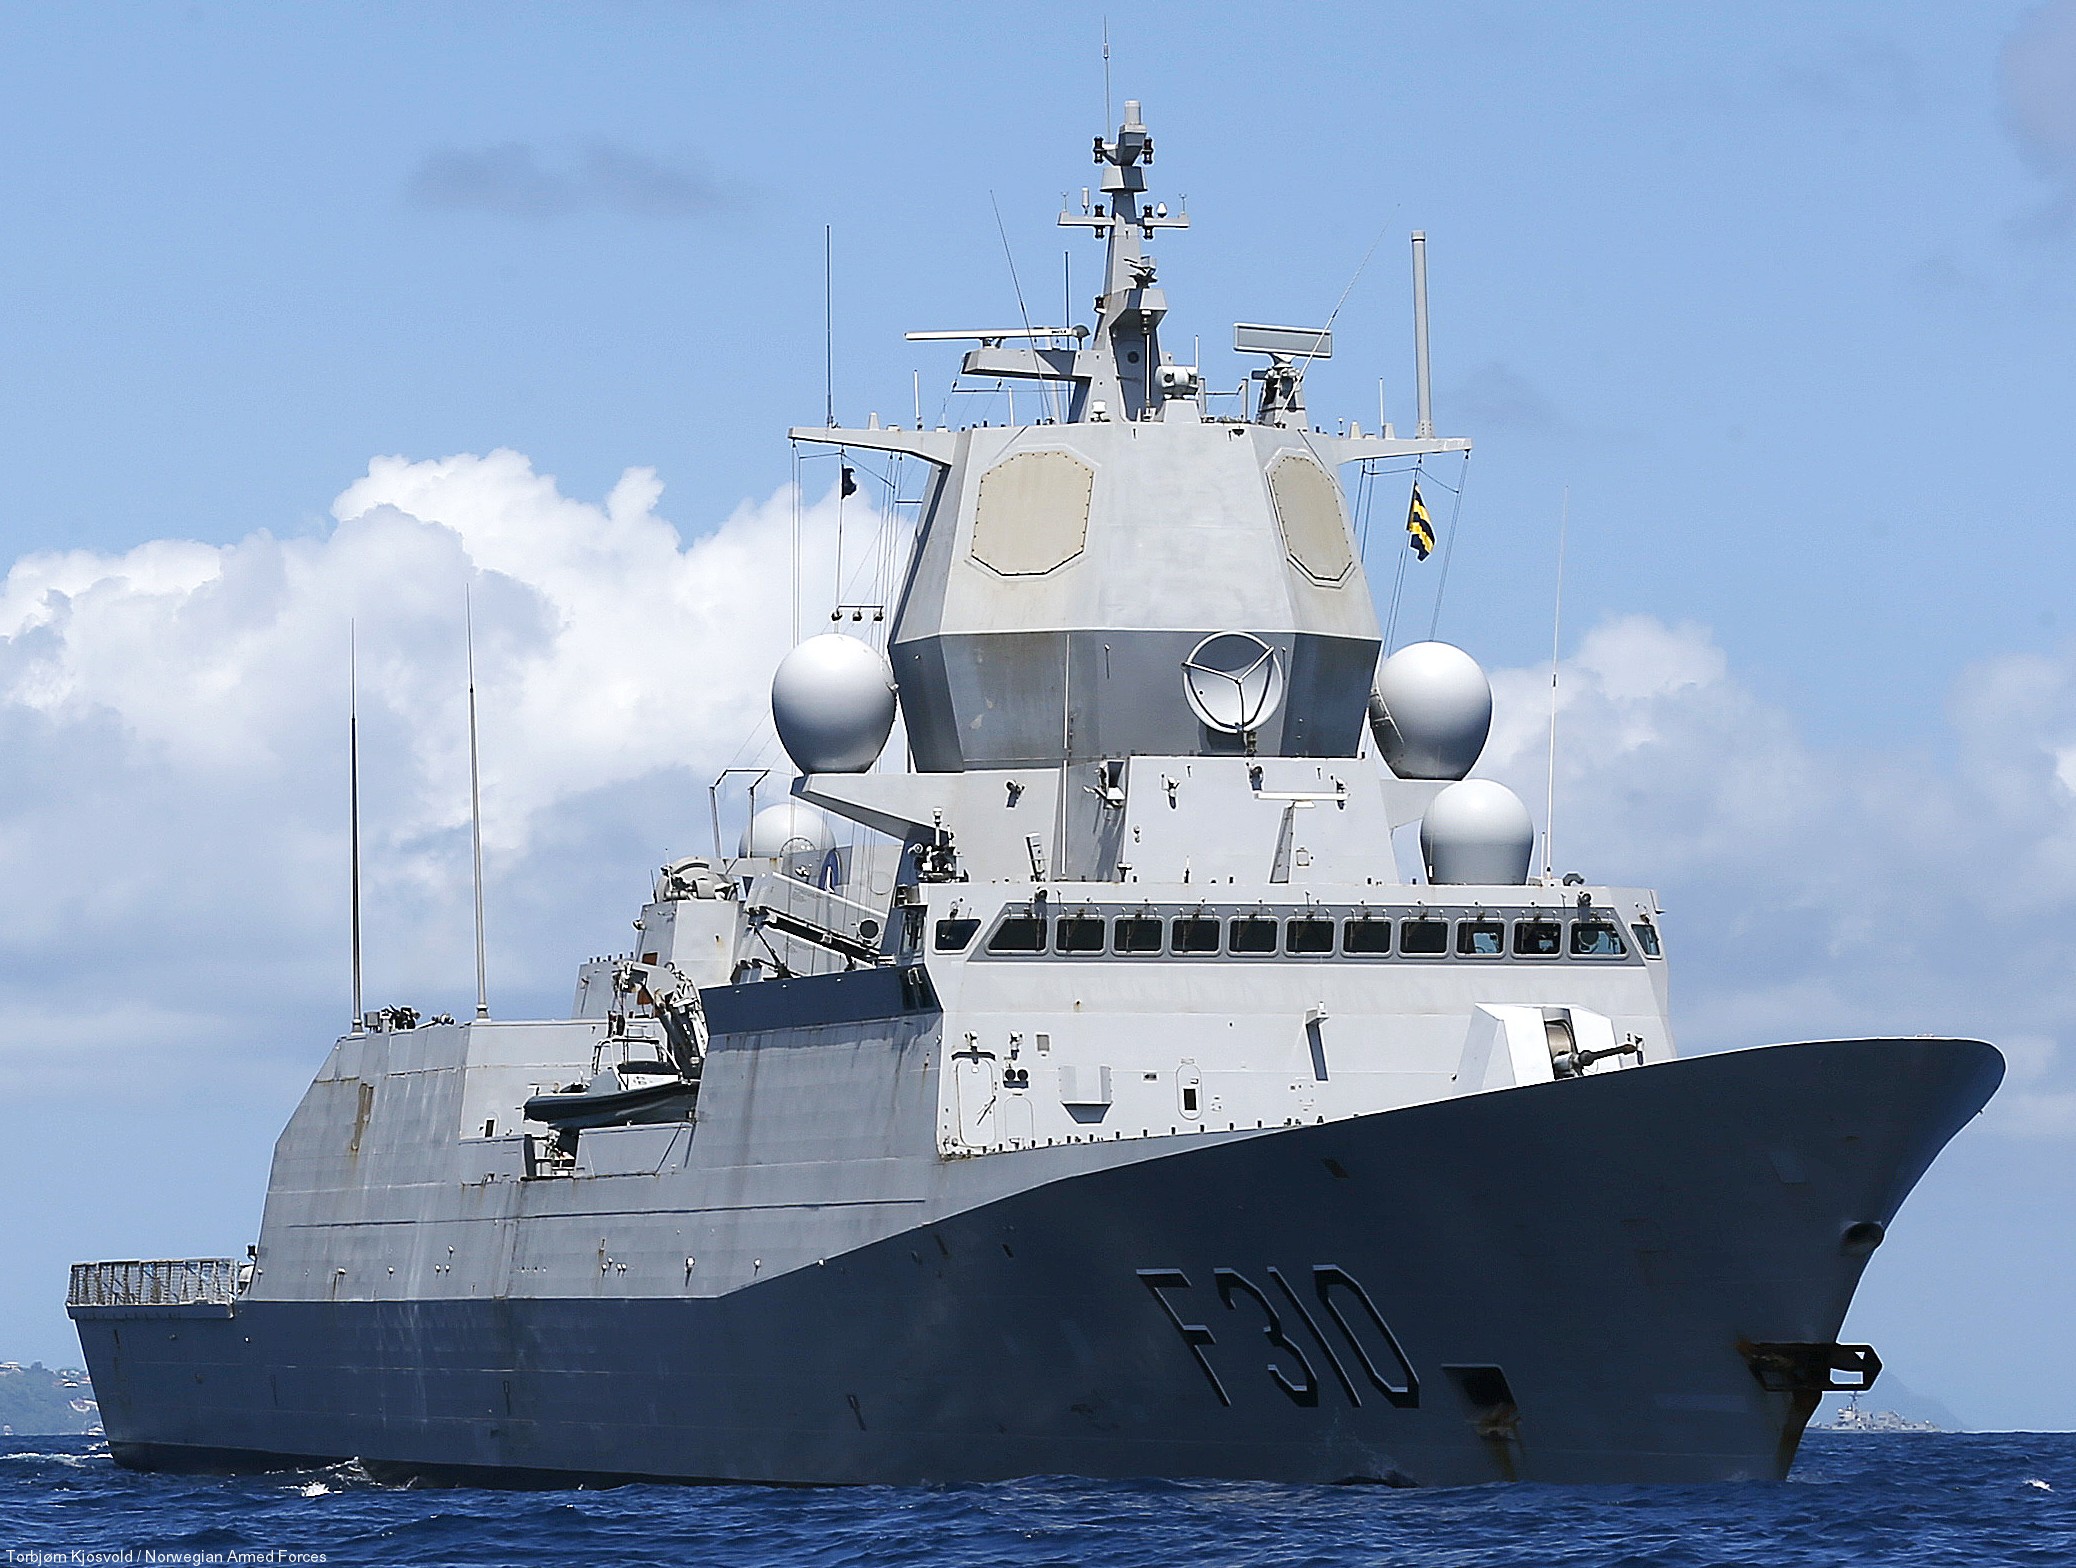 f-310 fridtjof nansen hnoms knm frigate royal norwegian navy sjoforsvaret 07